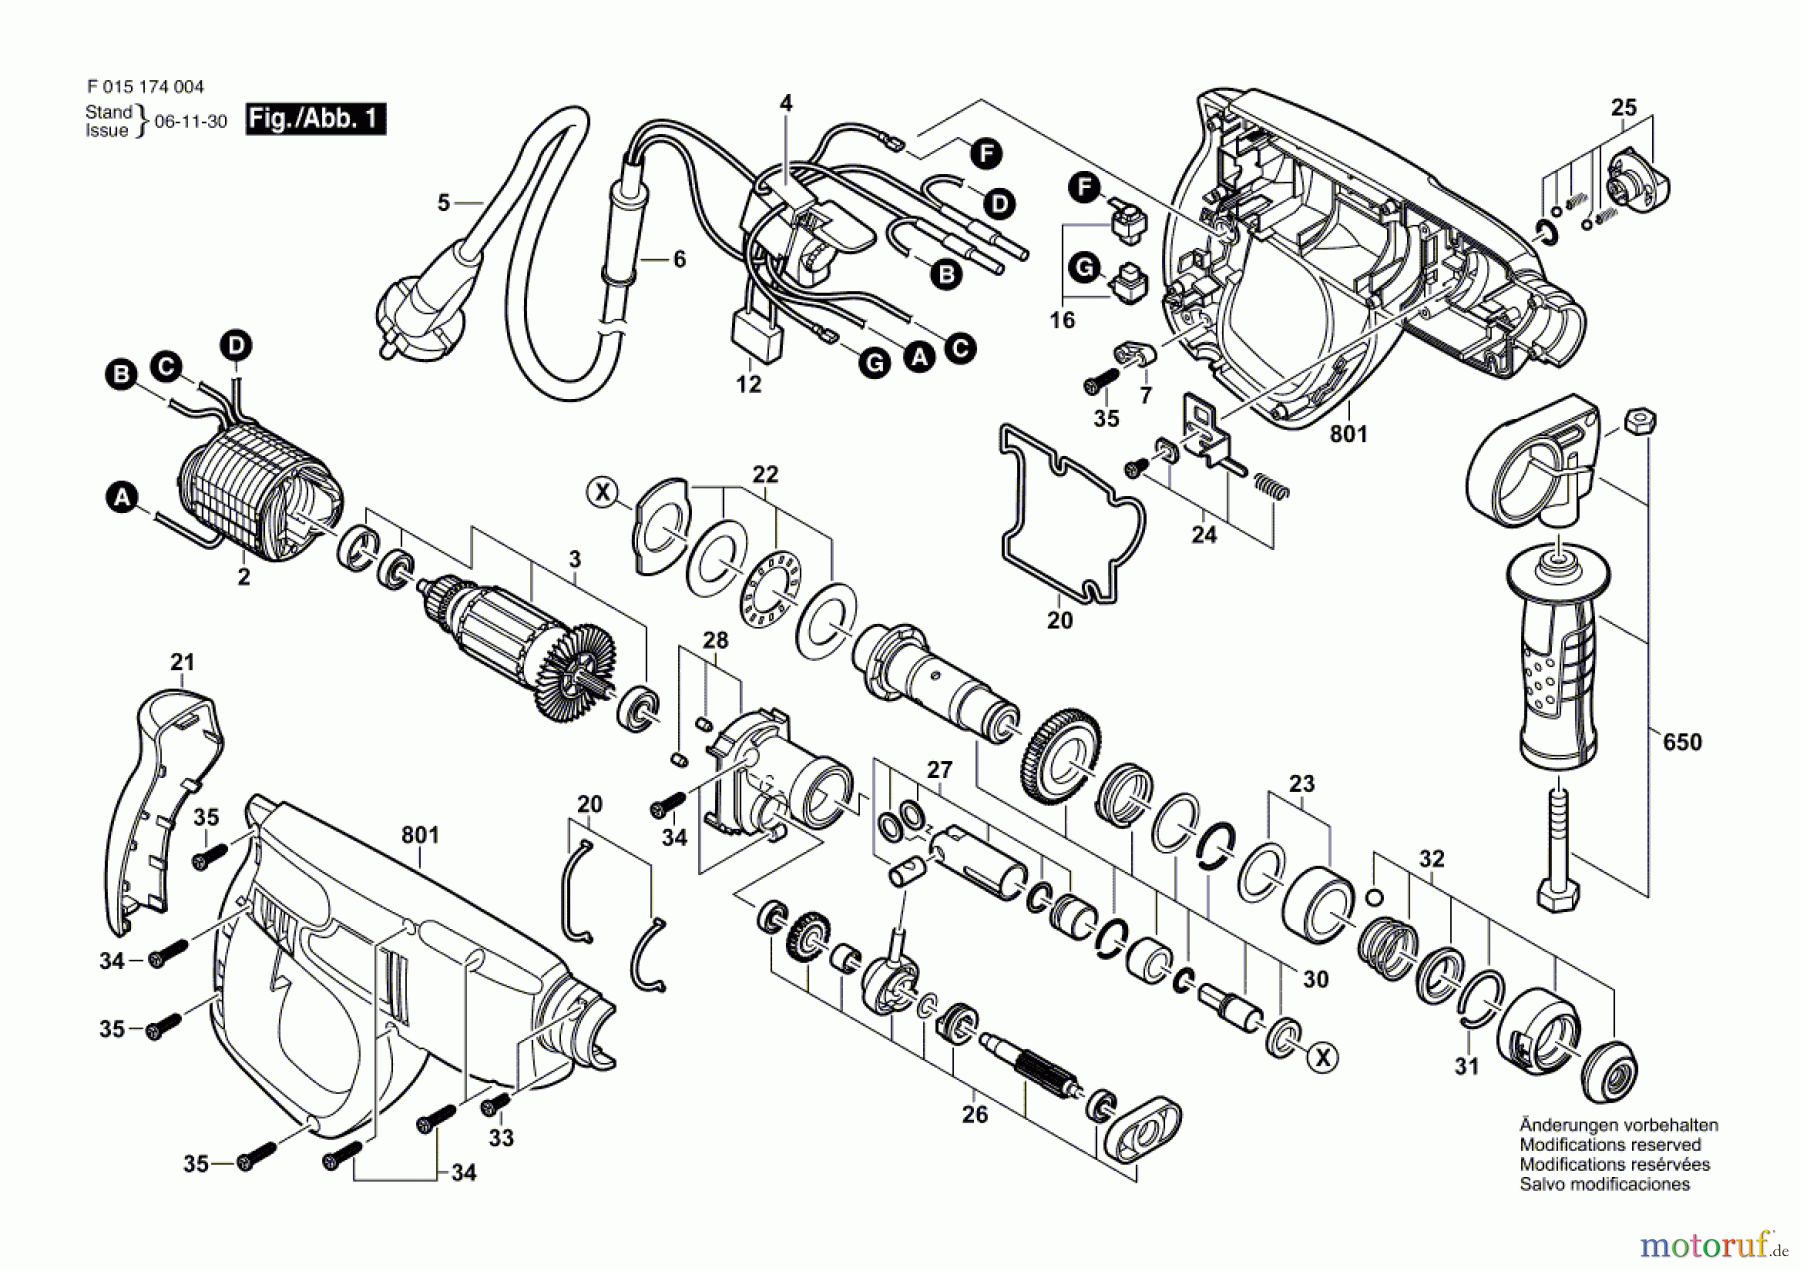  Bosch Werkzeug Bohrhammer 1703 Seite 1